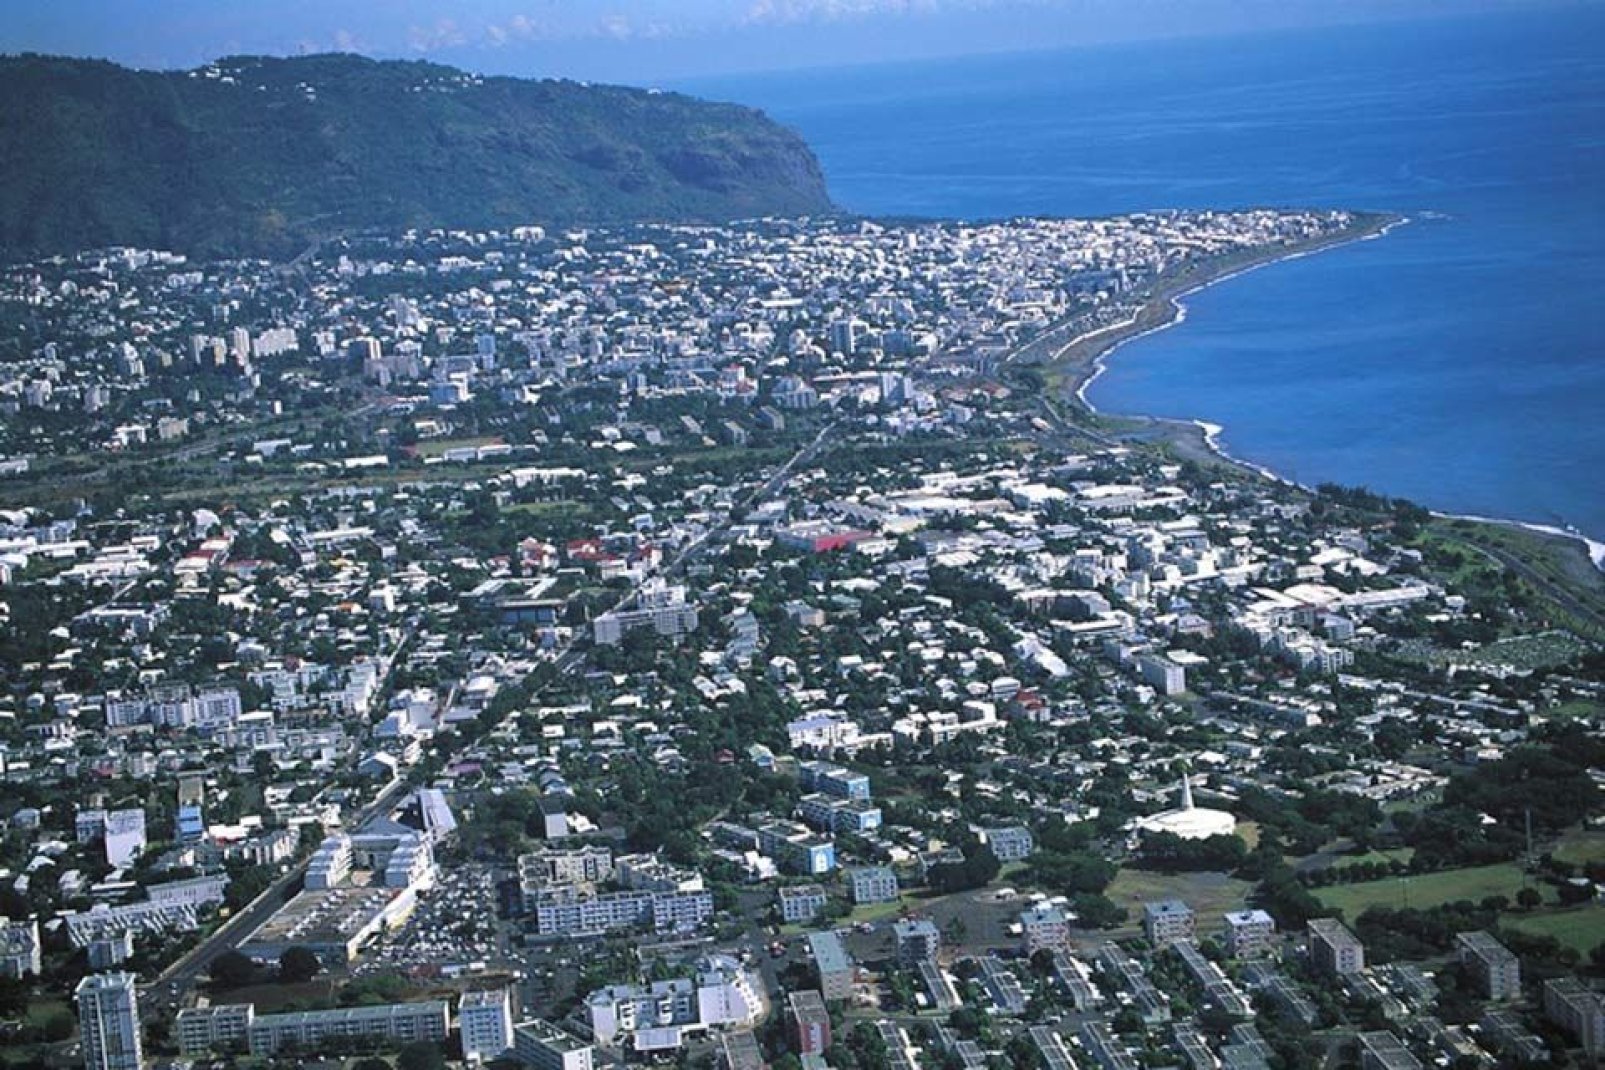 Chef lieu du département de la Réunion, Saint-Denis, site aussi la capitale n'attire que peu de touristes.